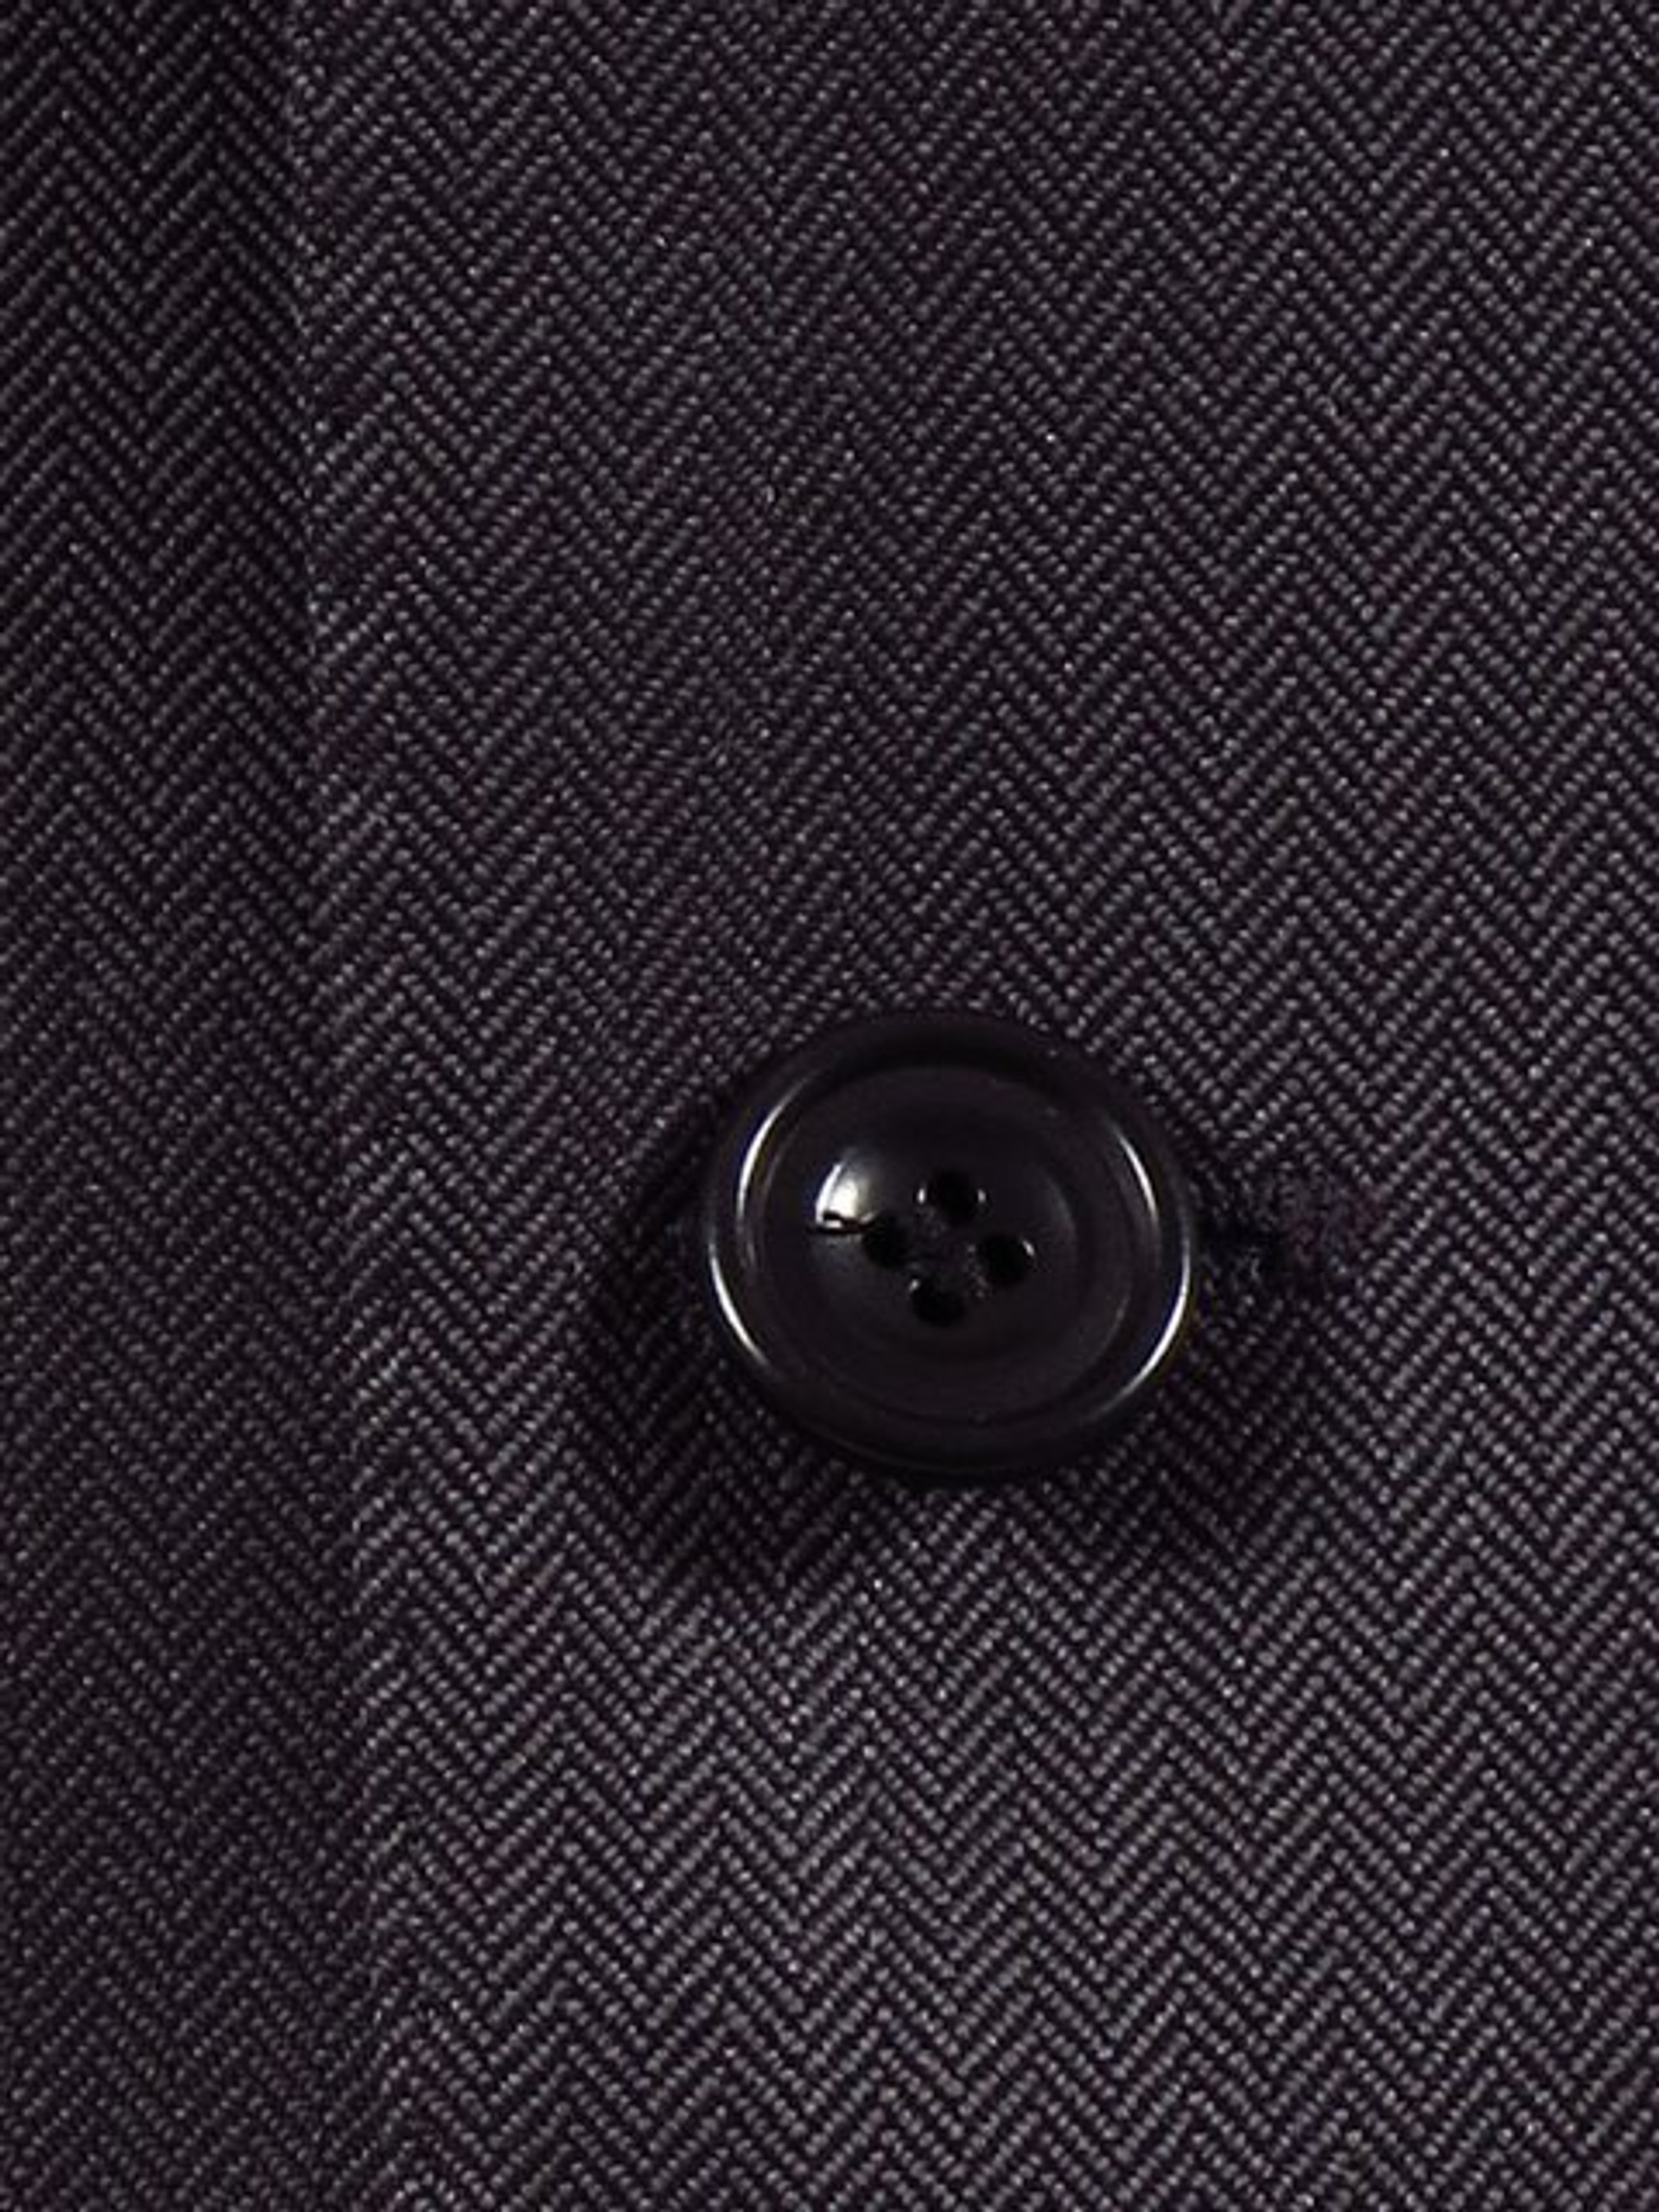 Magee Smart Dark Grey Suit Jacket Herringbone Wool NEW RRP £260 - Tweedmans